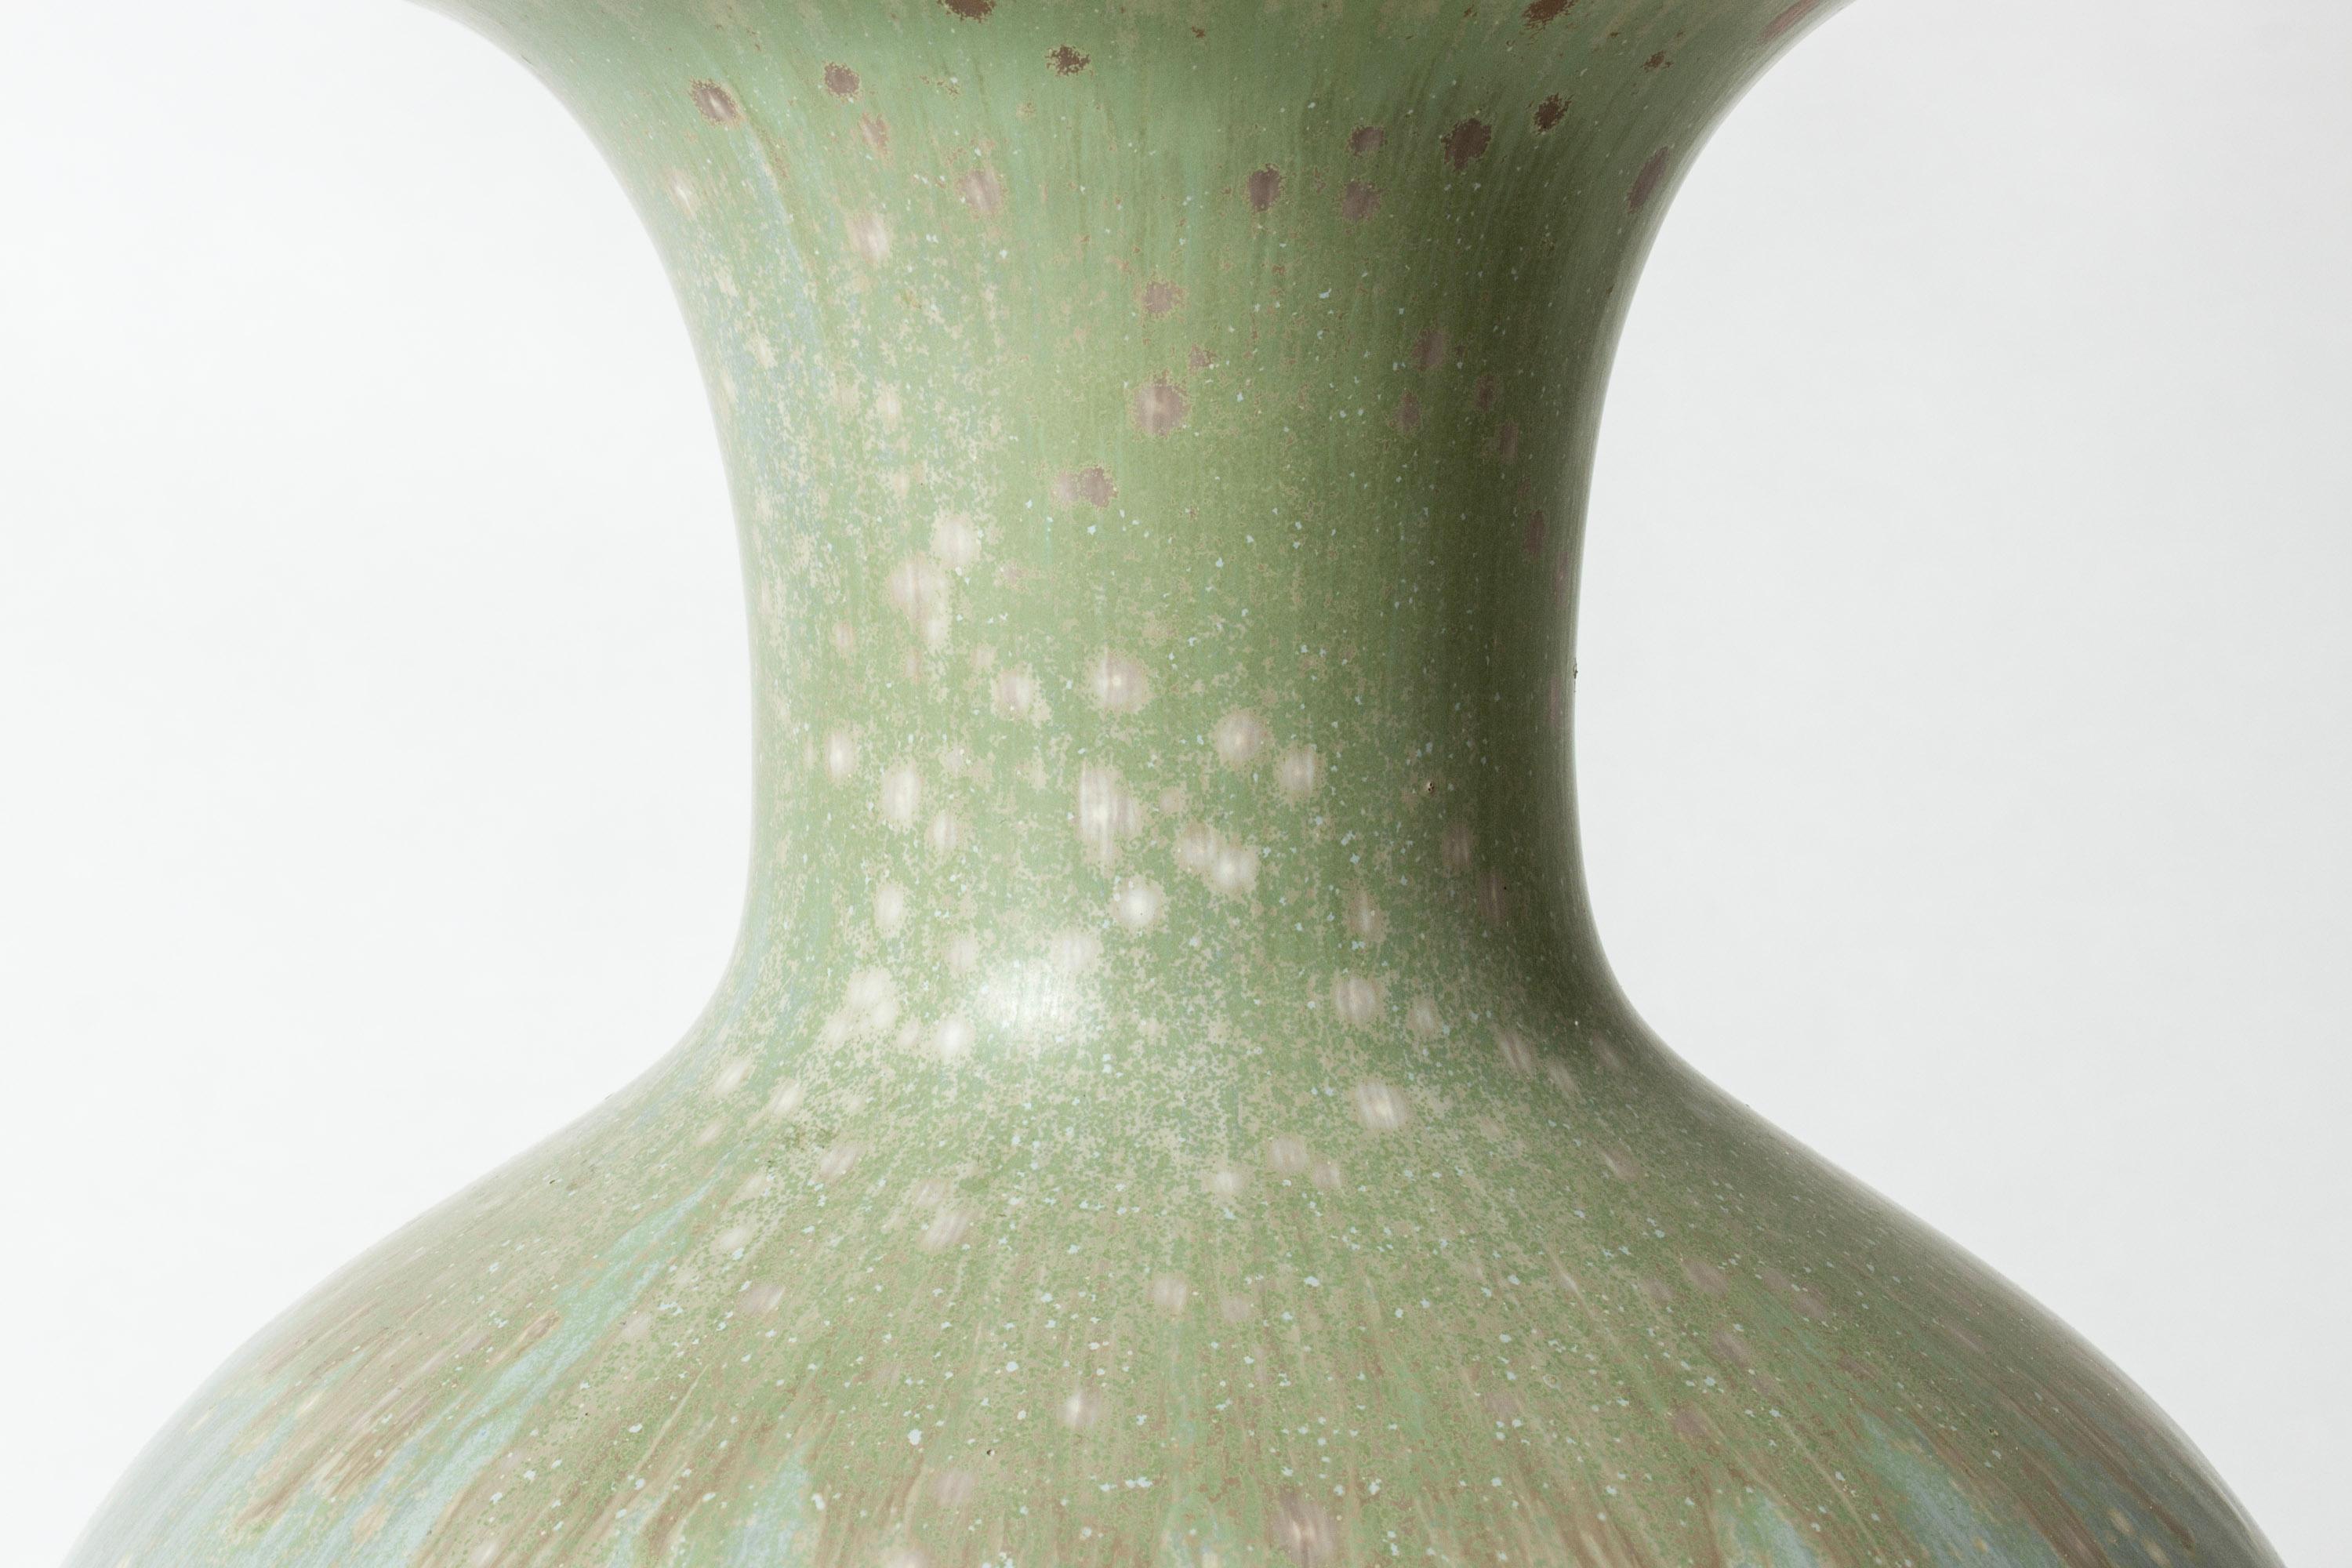 Vintage Midcentury Stoneware Floor Vase by Gunnar Nylund, Sweden, 1940s For Sale 1